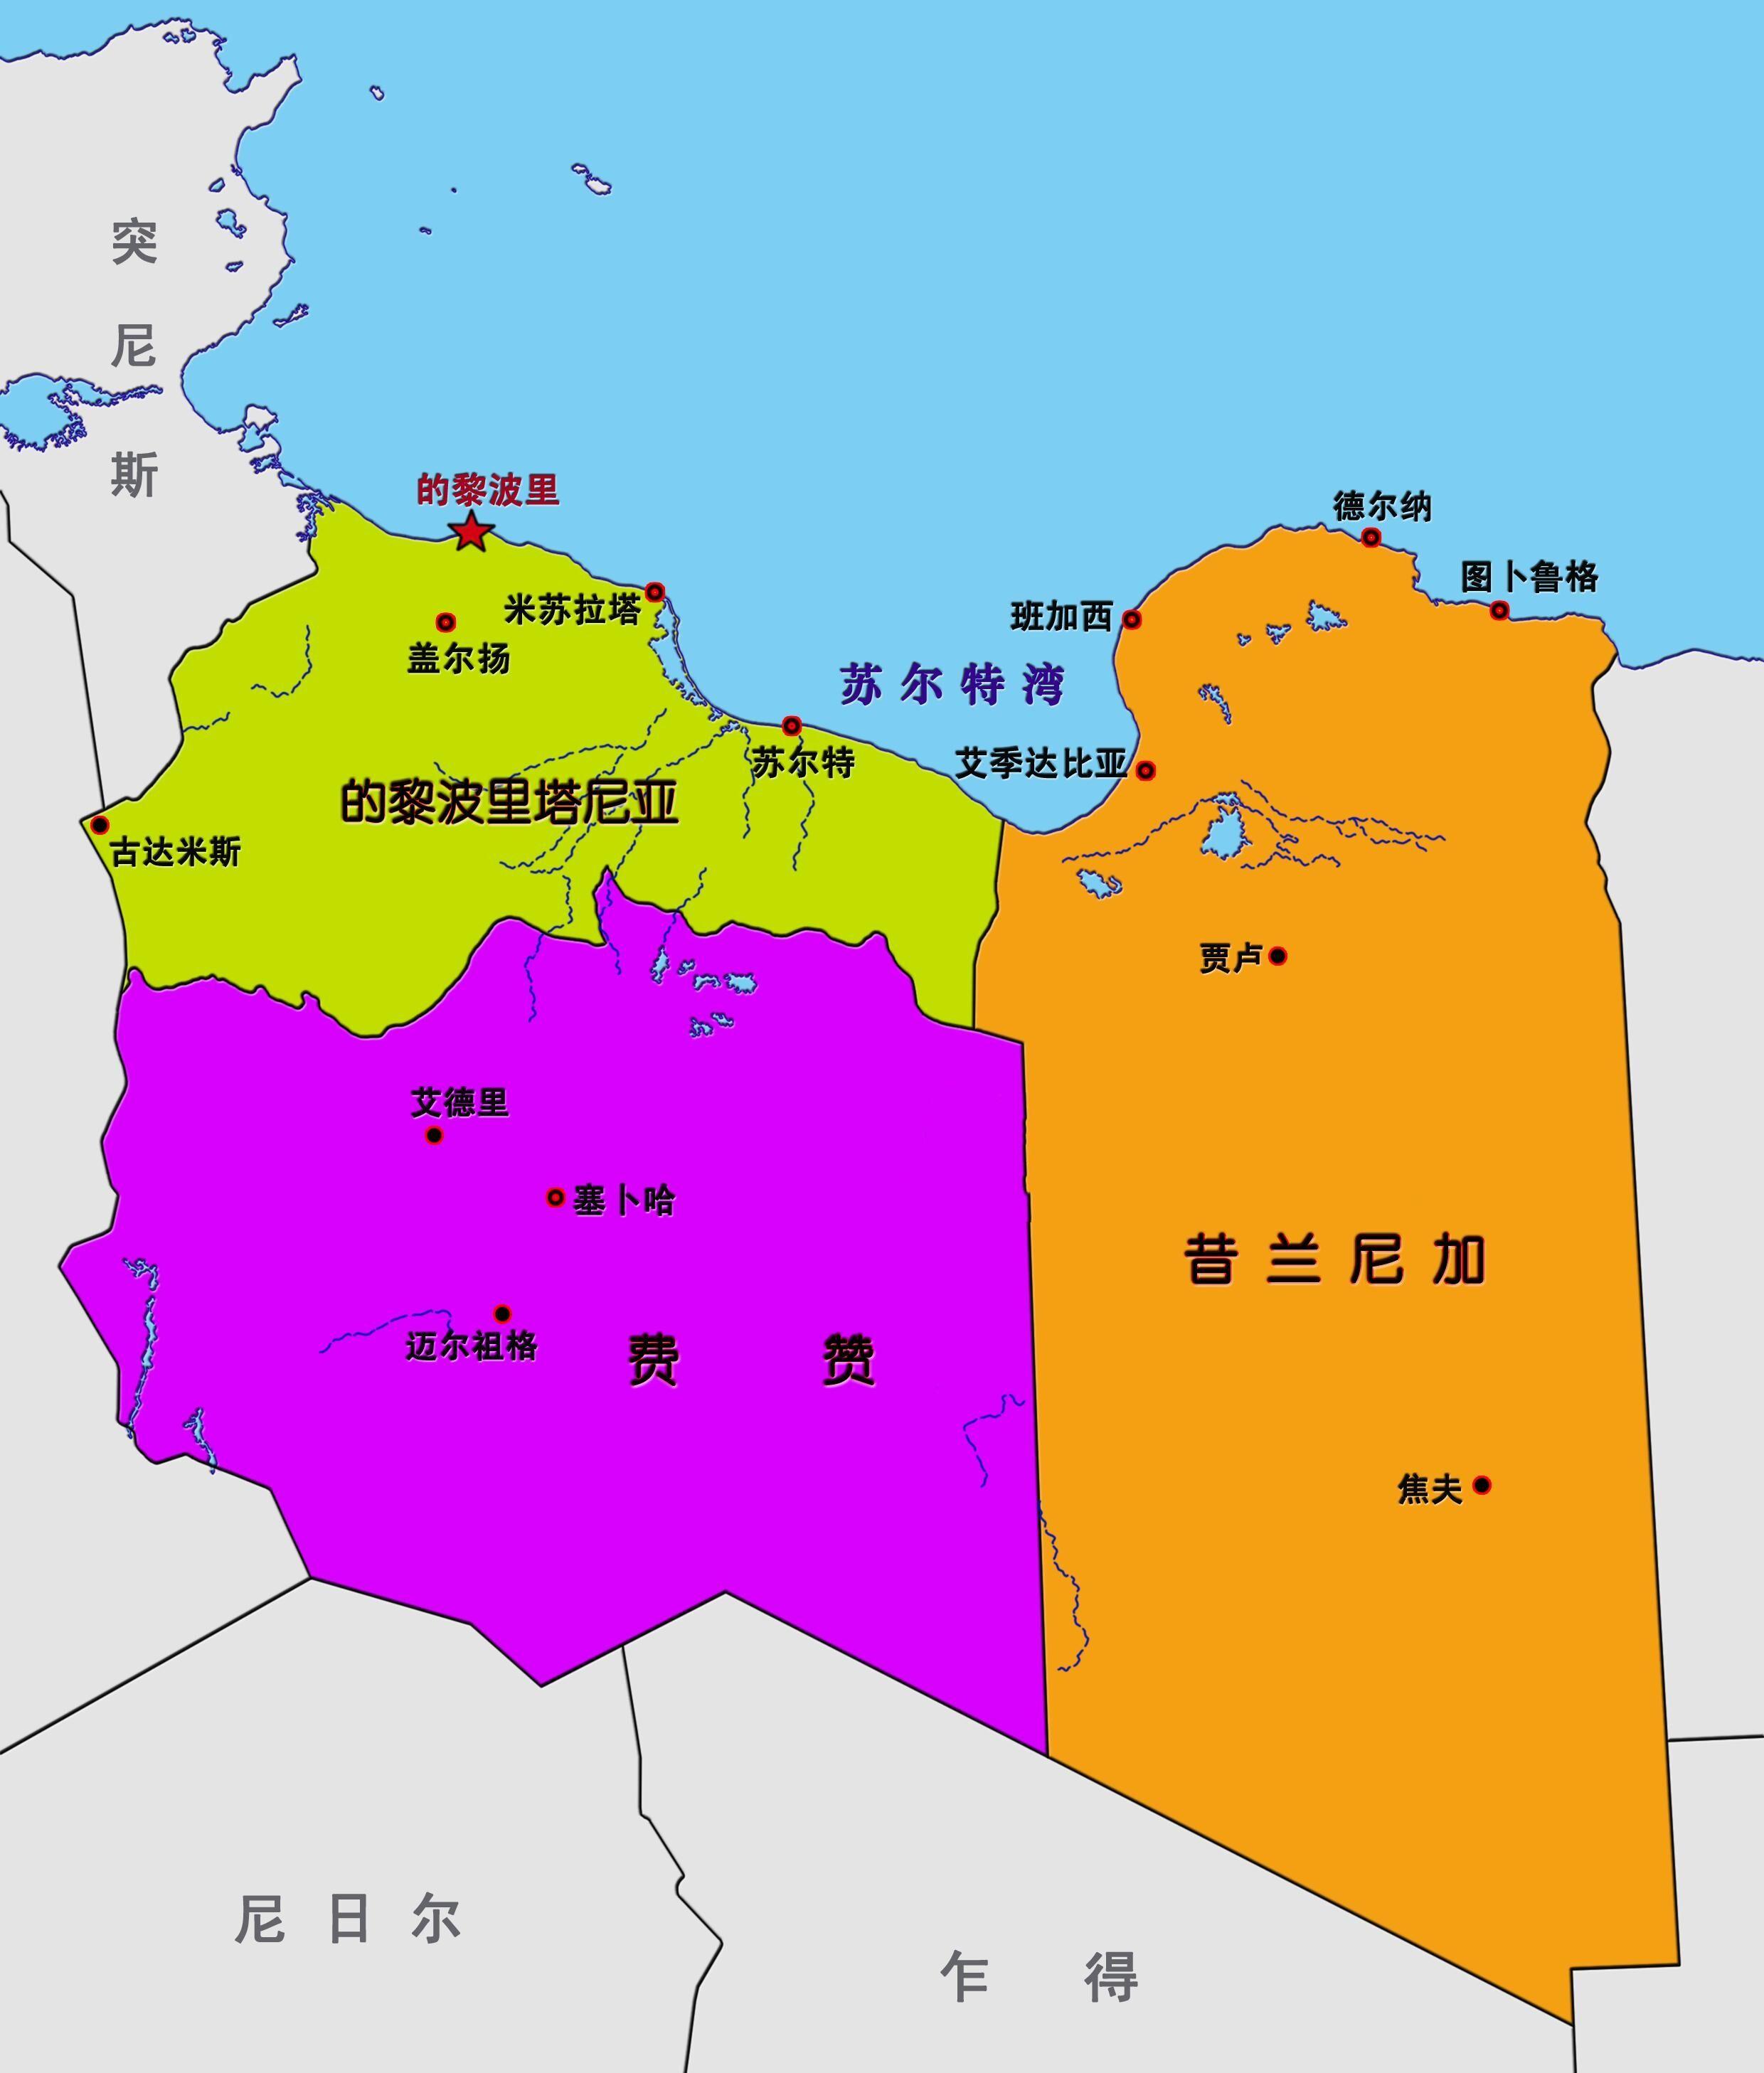 利比亚位于北非,与意大利隔海相望